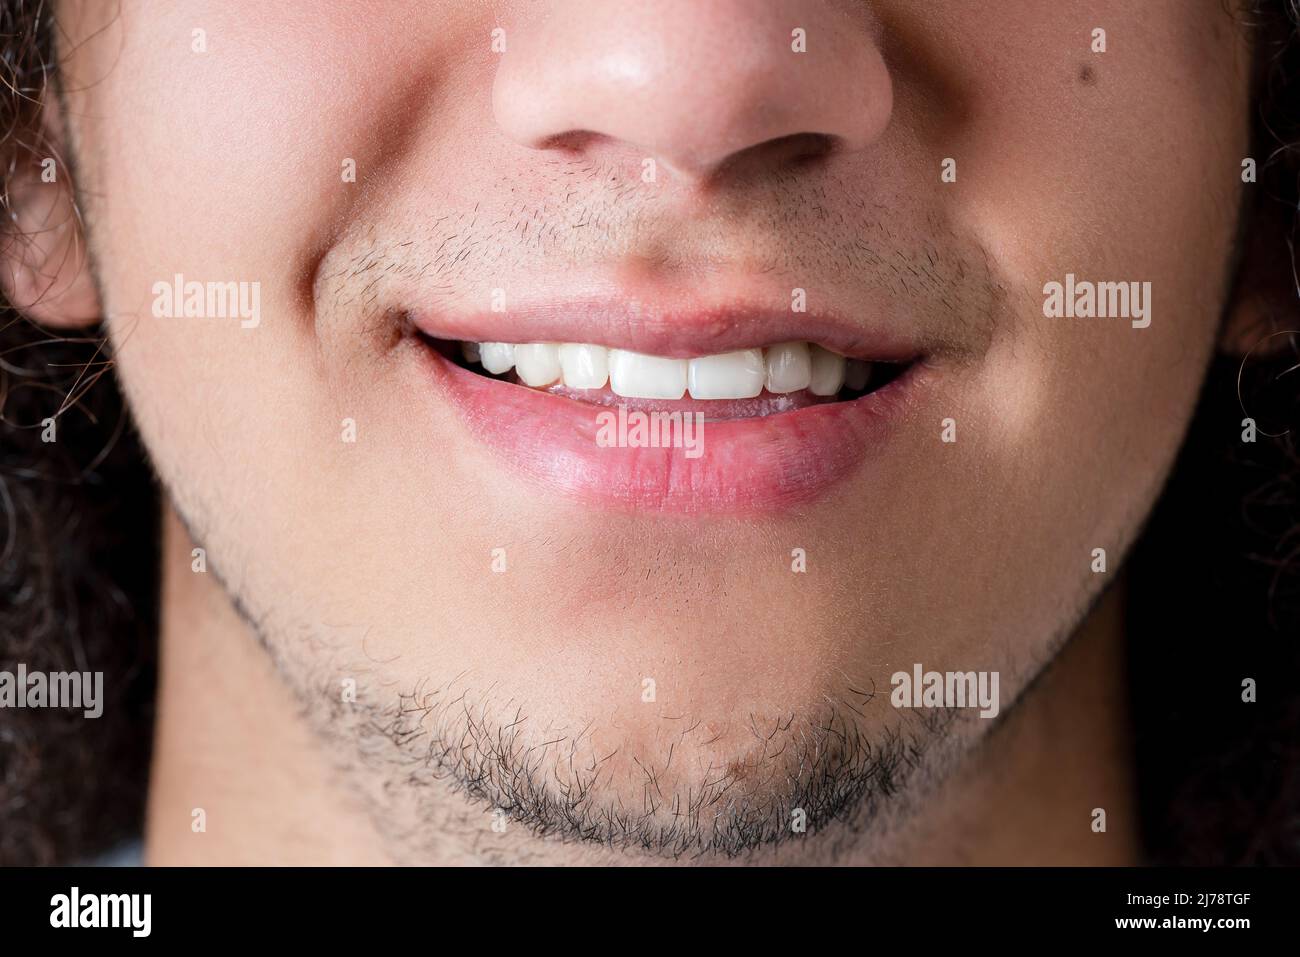 Primo piano foto di un viso sorridente e bocca di un uomo giovane, bello e bearded. Foto di alta qualità Foto Stock